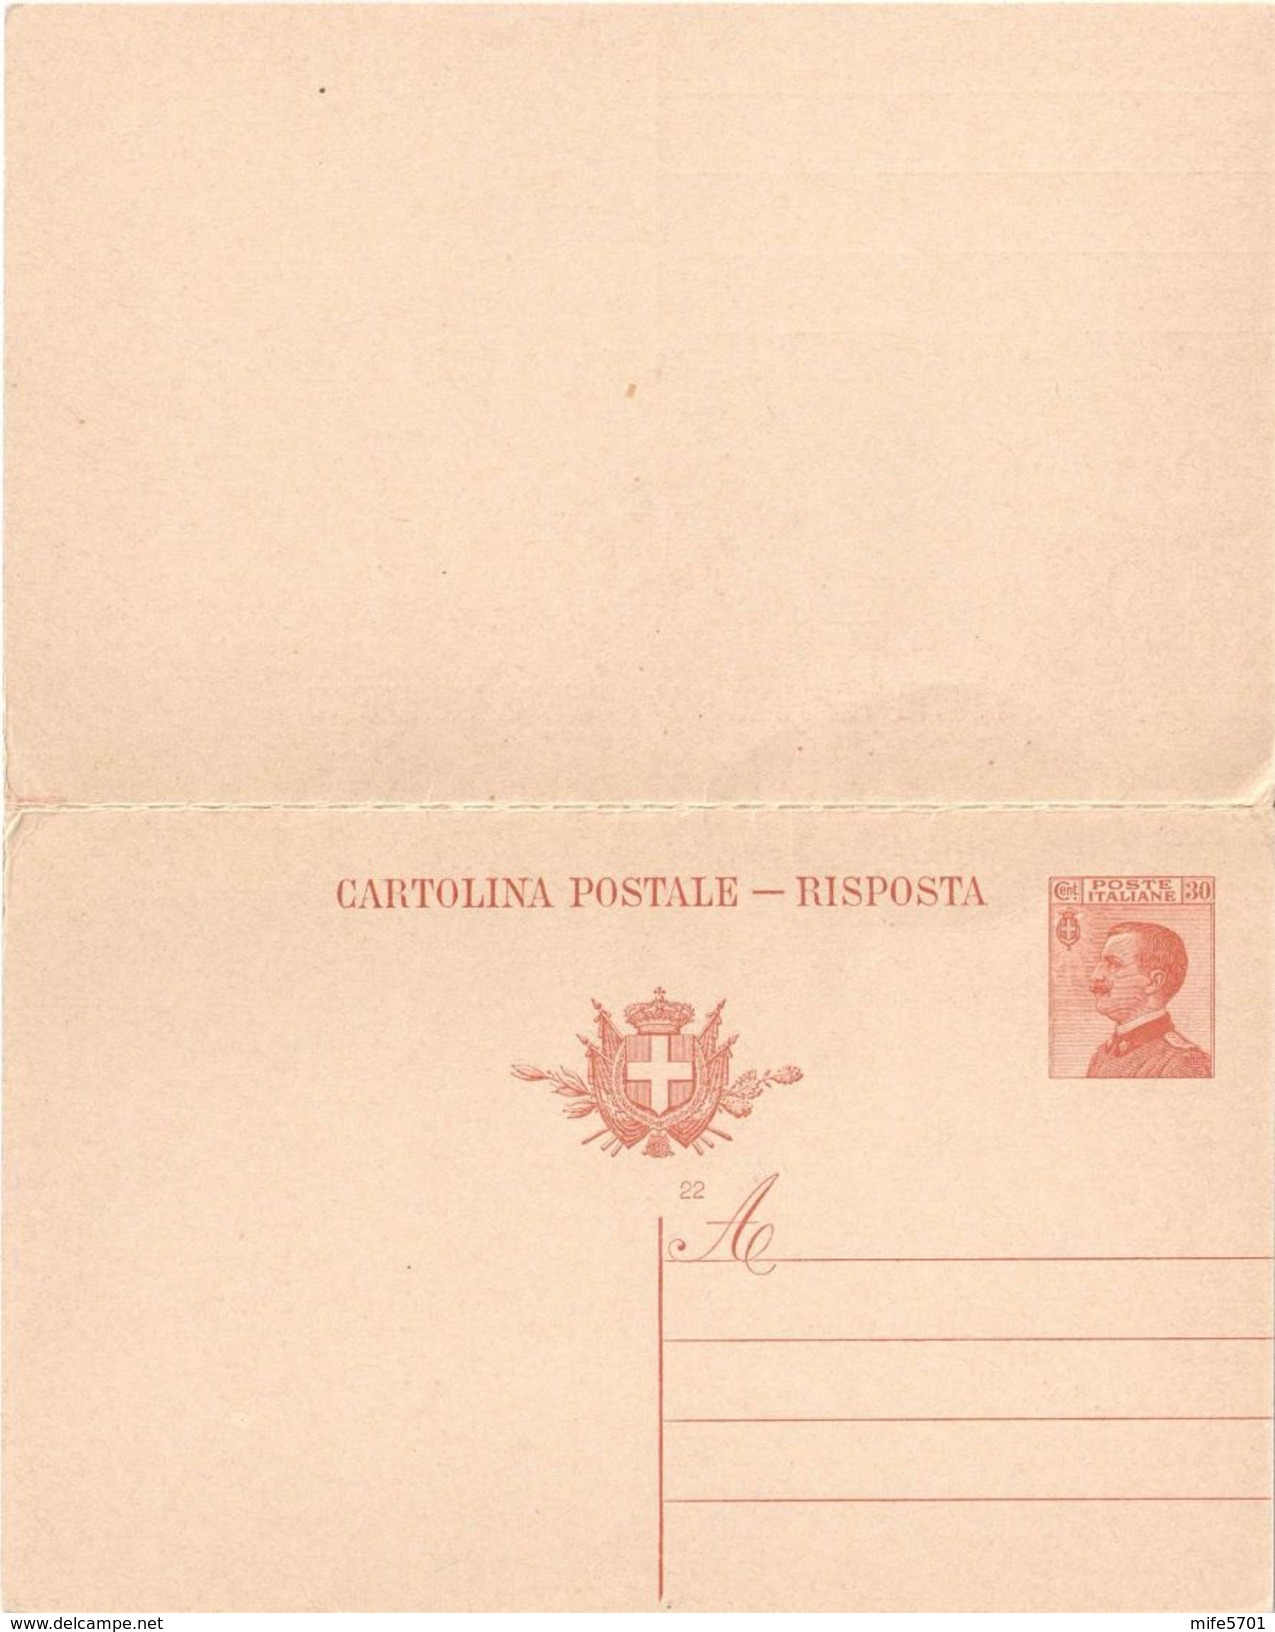 CARTOLINA POSTALE TIPO MICHETTI CON RISPOSTA PAGATA C. 30+30 - 1923 - CATALOGO FILAGRANO "C54" - MILLESIMO 22 - NUOVA ** - Interi Postali